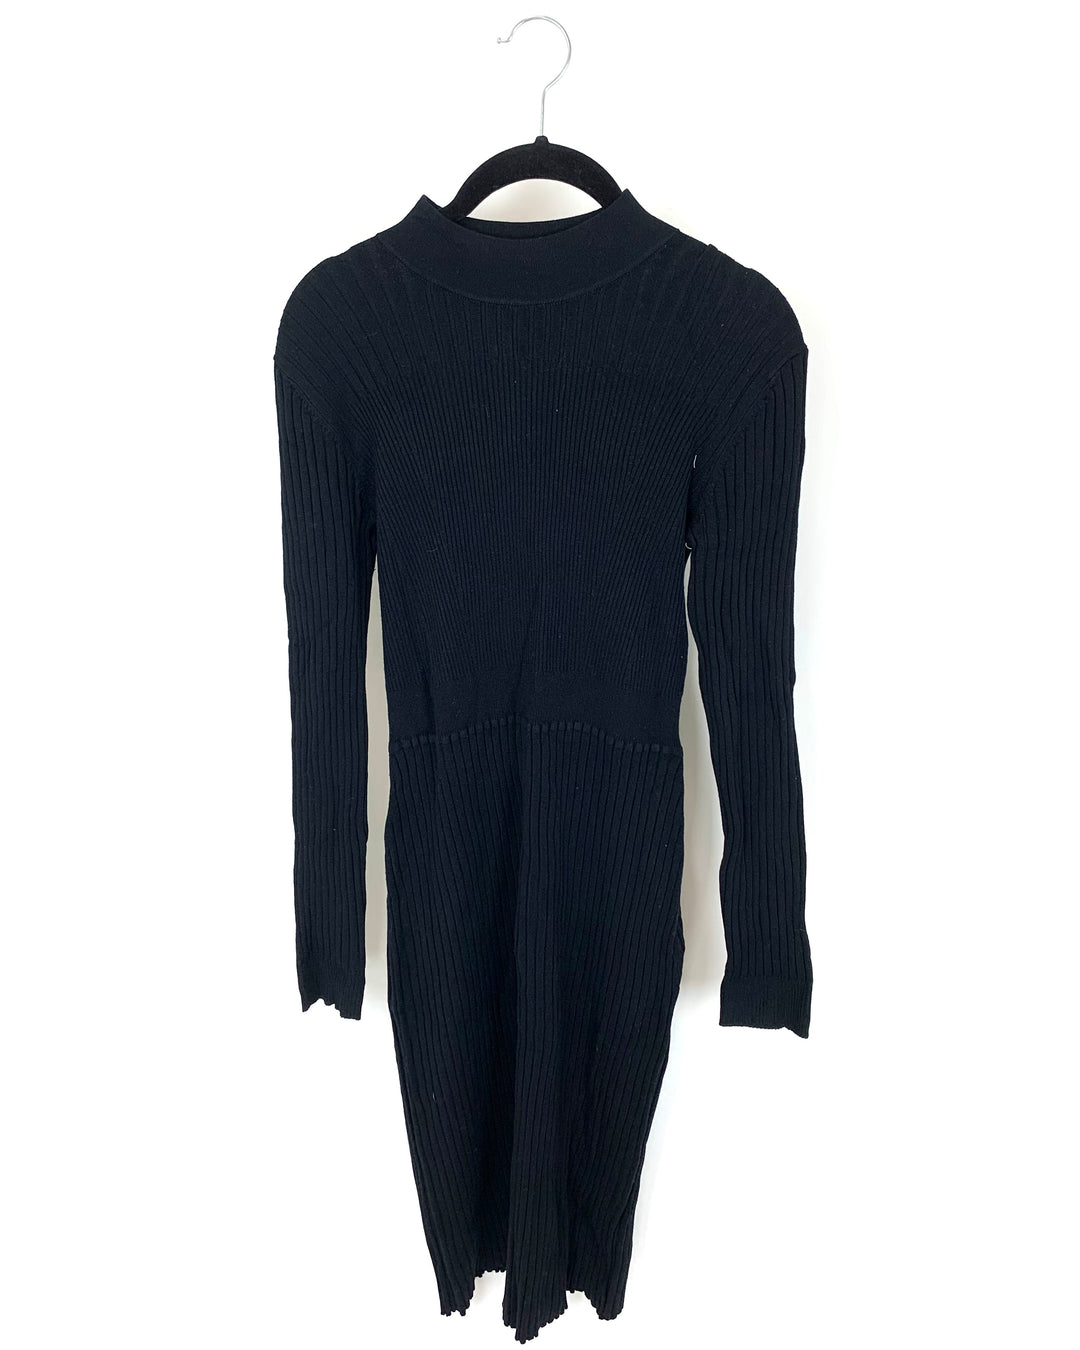 Black Knit Ribbed Dress - Size 4/6